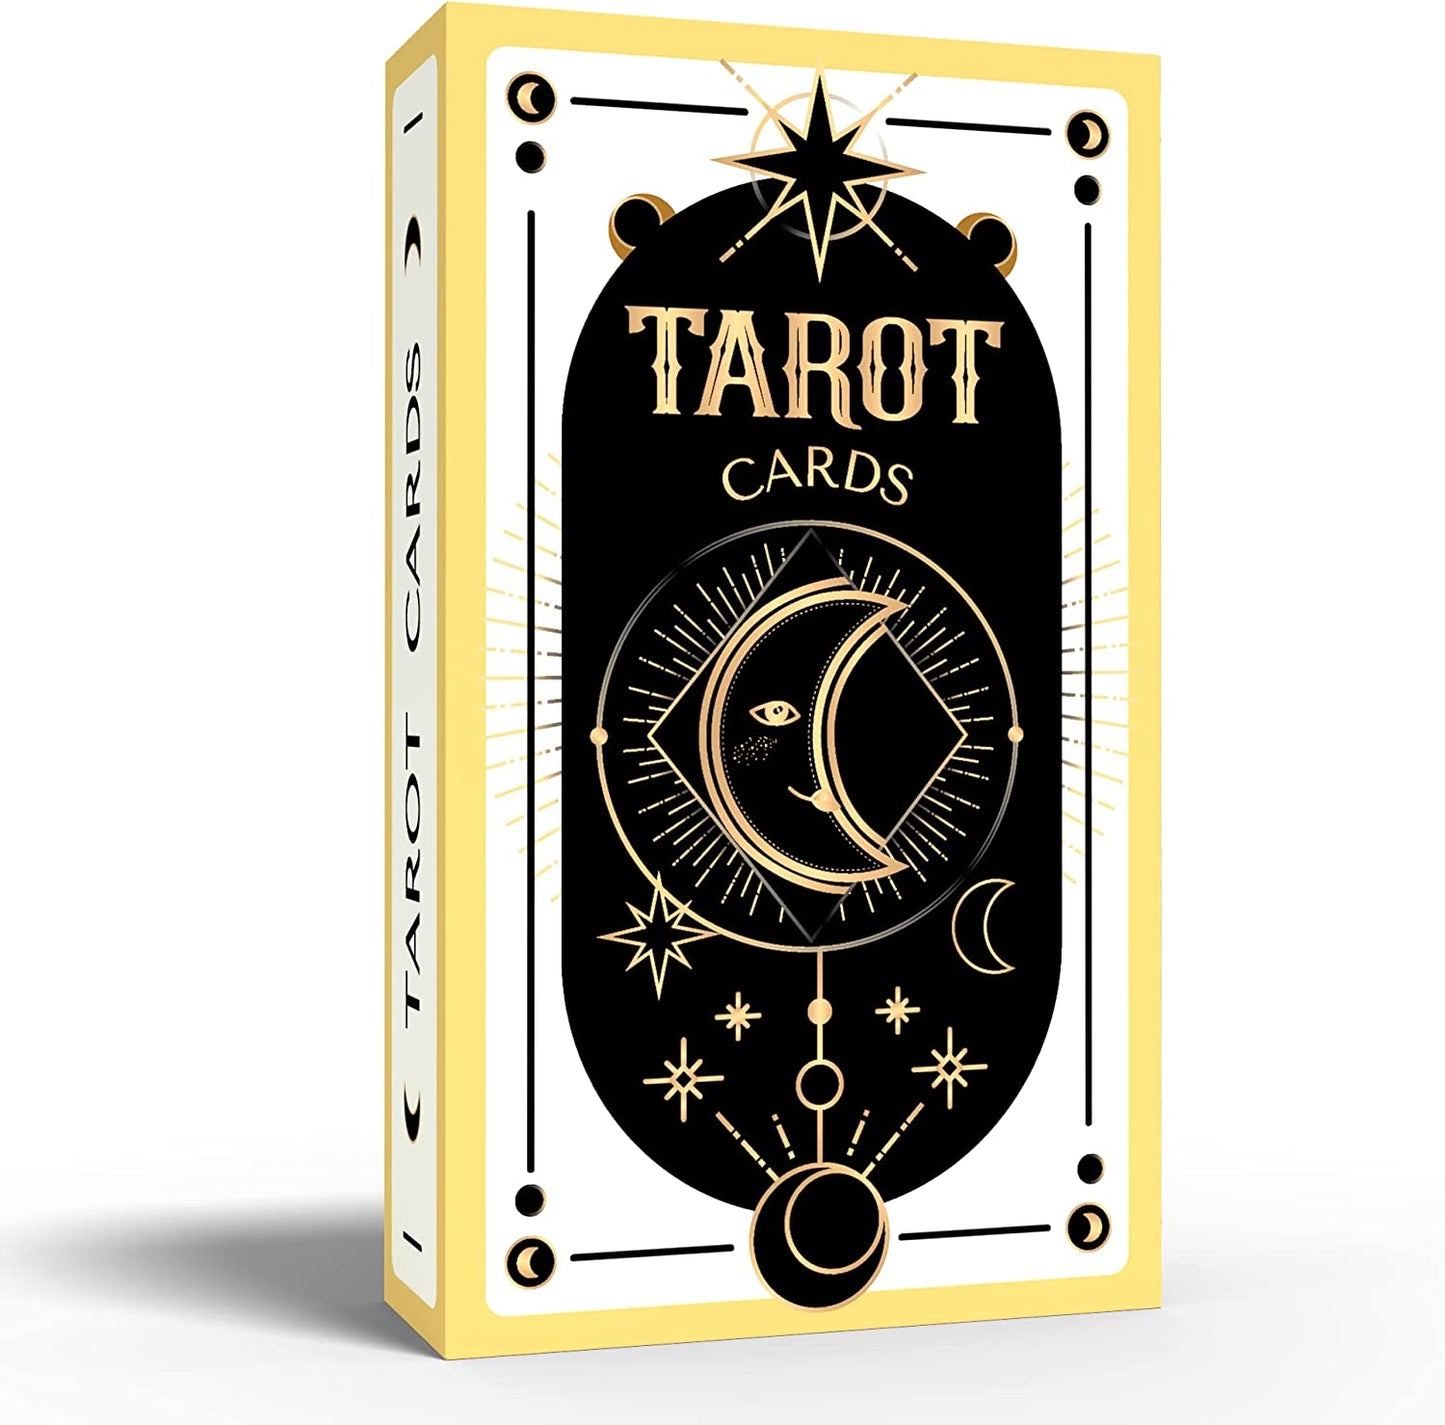 New Classic Original Tarot Cards | Fully Remastered Beautiful Tarot Deck | 78 Card Tarot Cards Deck | Based On Original Tarot Deck, Gold